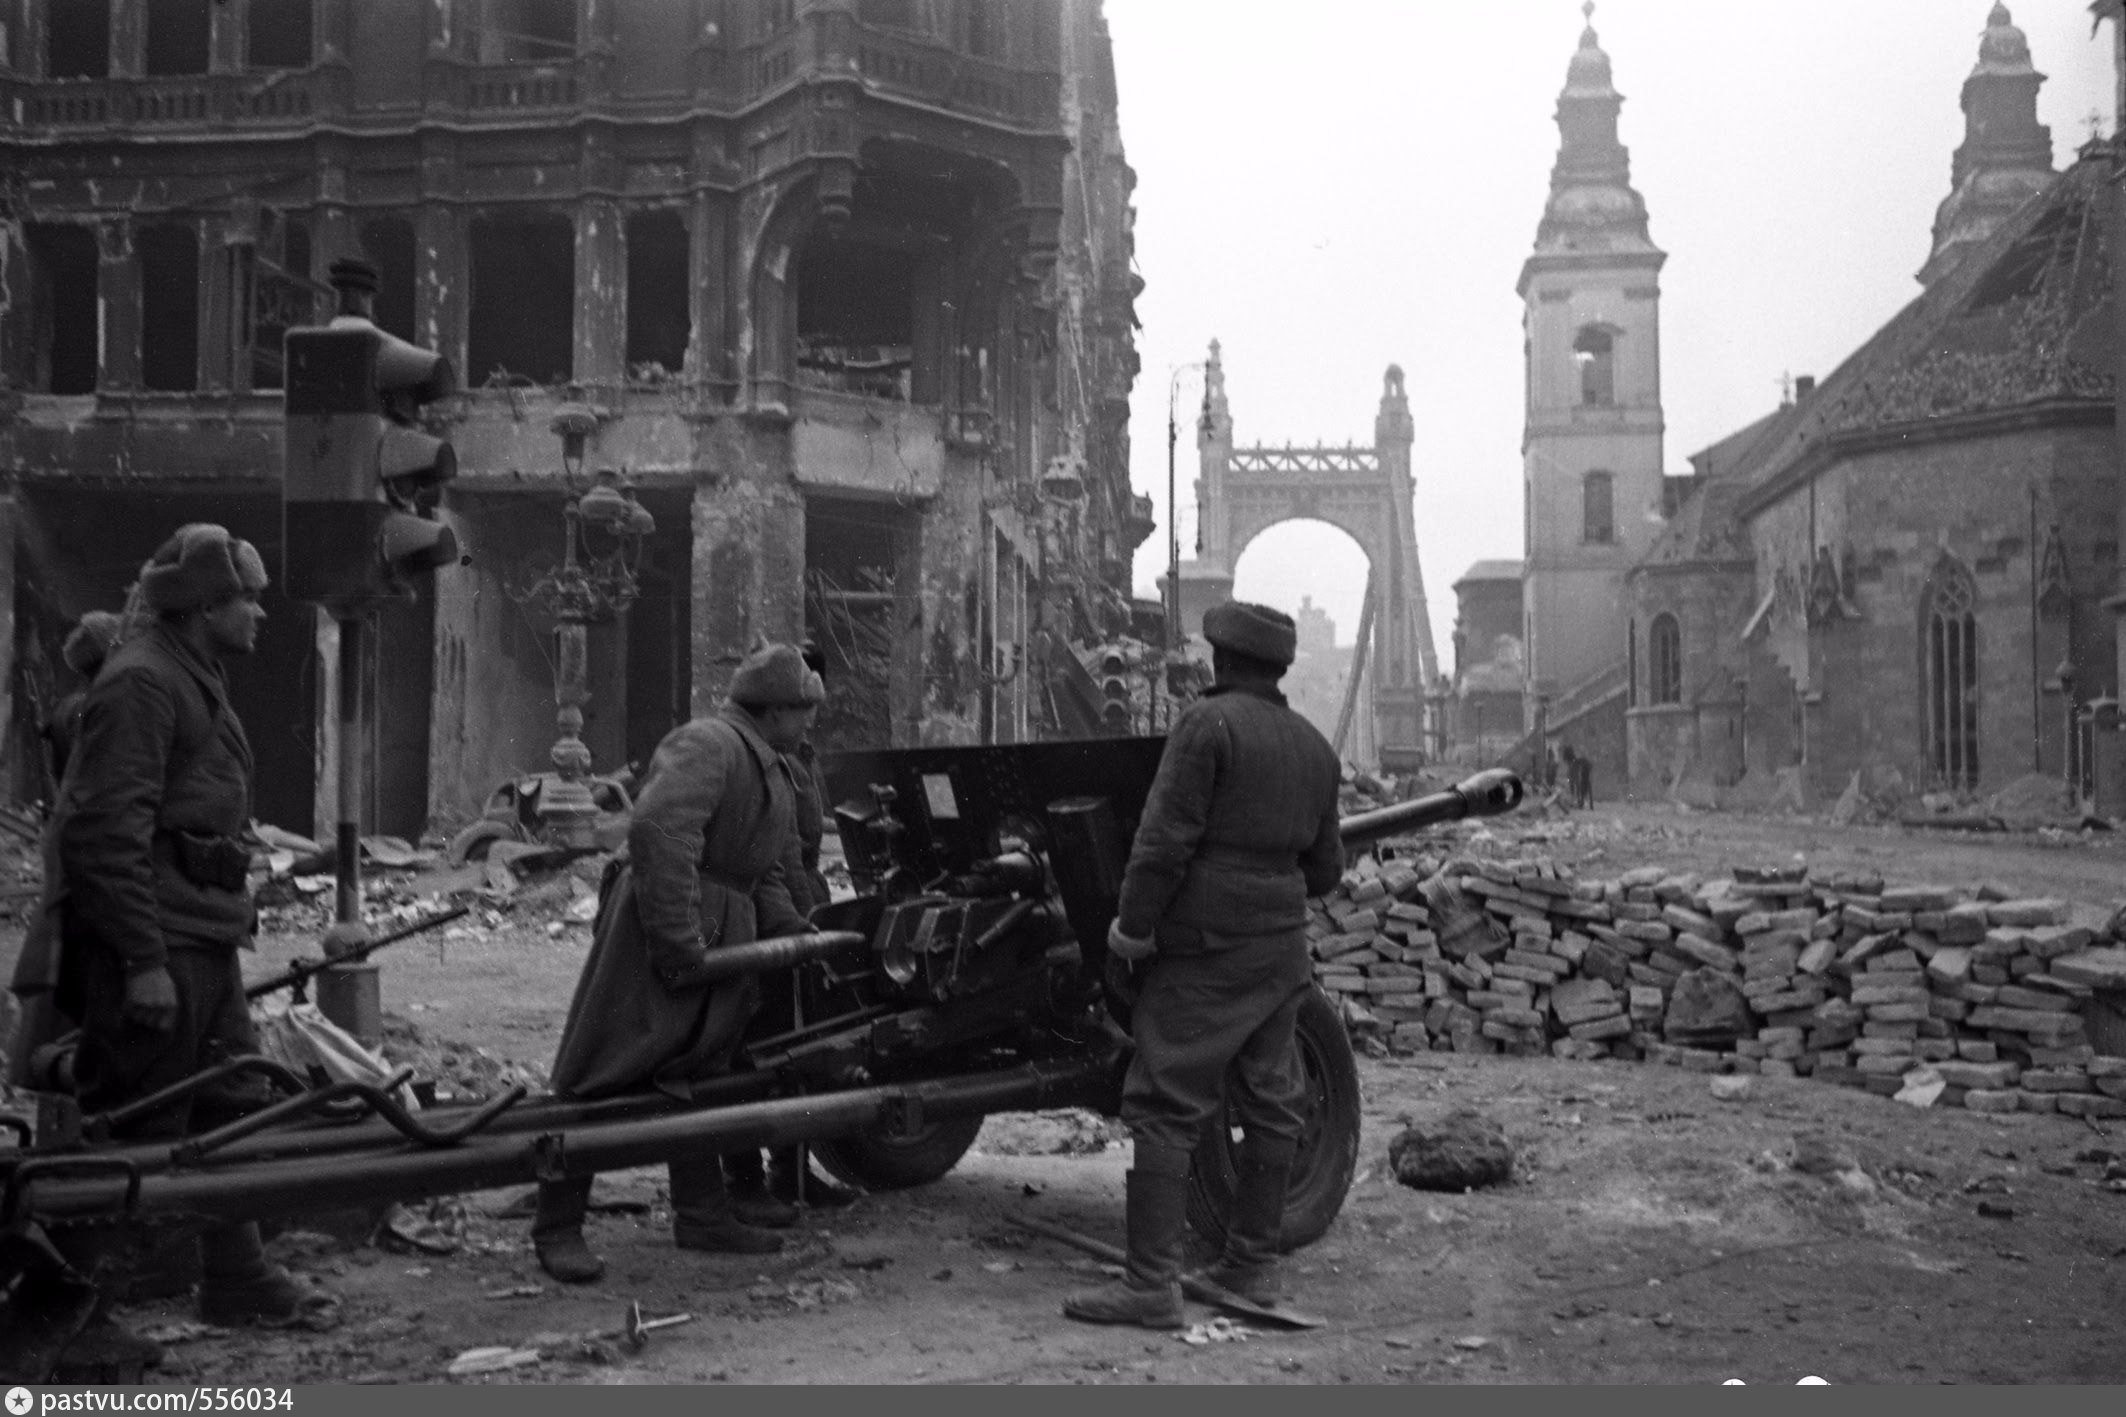 7 февраля 1944 года. Освобождение Будапешта 1944. Штурм Будапешта 1944. 13 Февраля 1945 г. - освобождение Будапешта. Освобождение Будапешта советскими войсками.